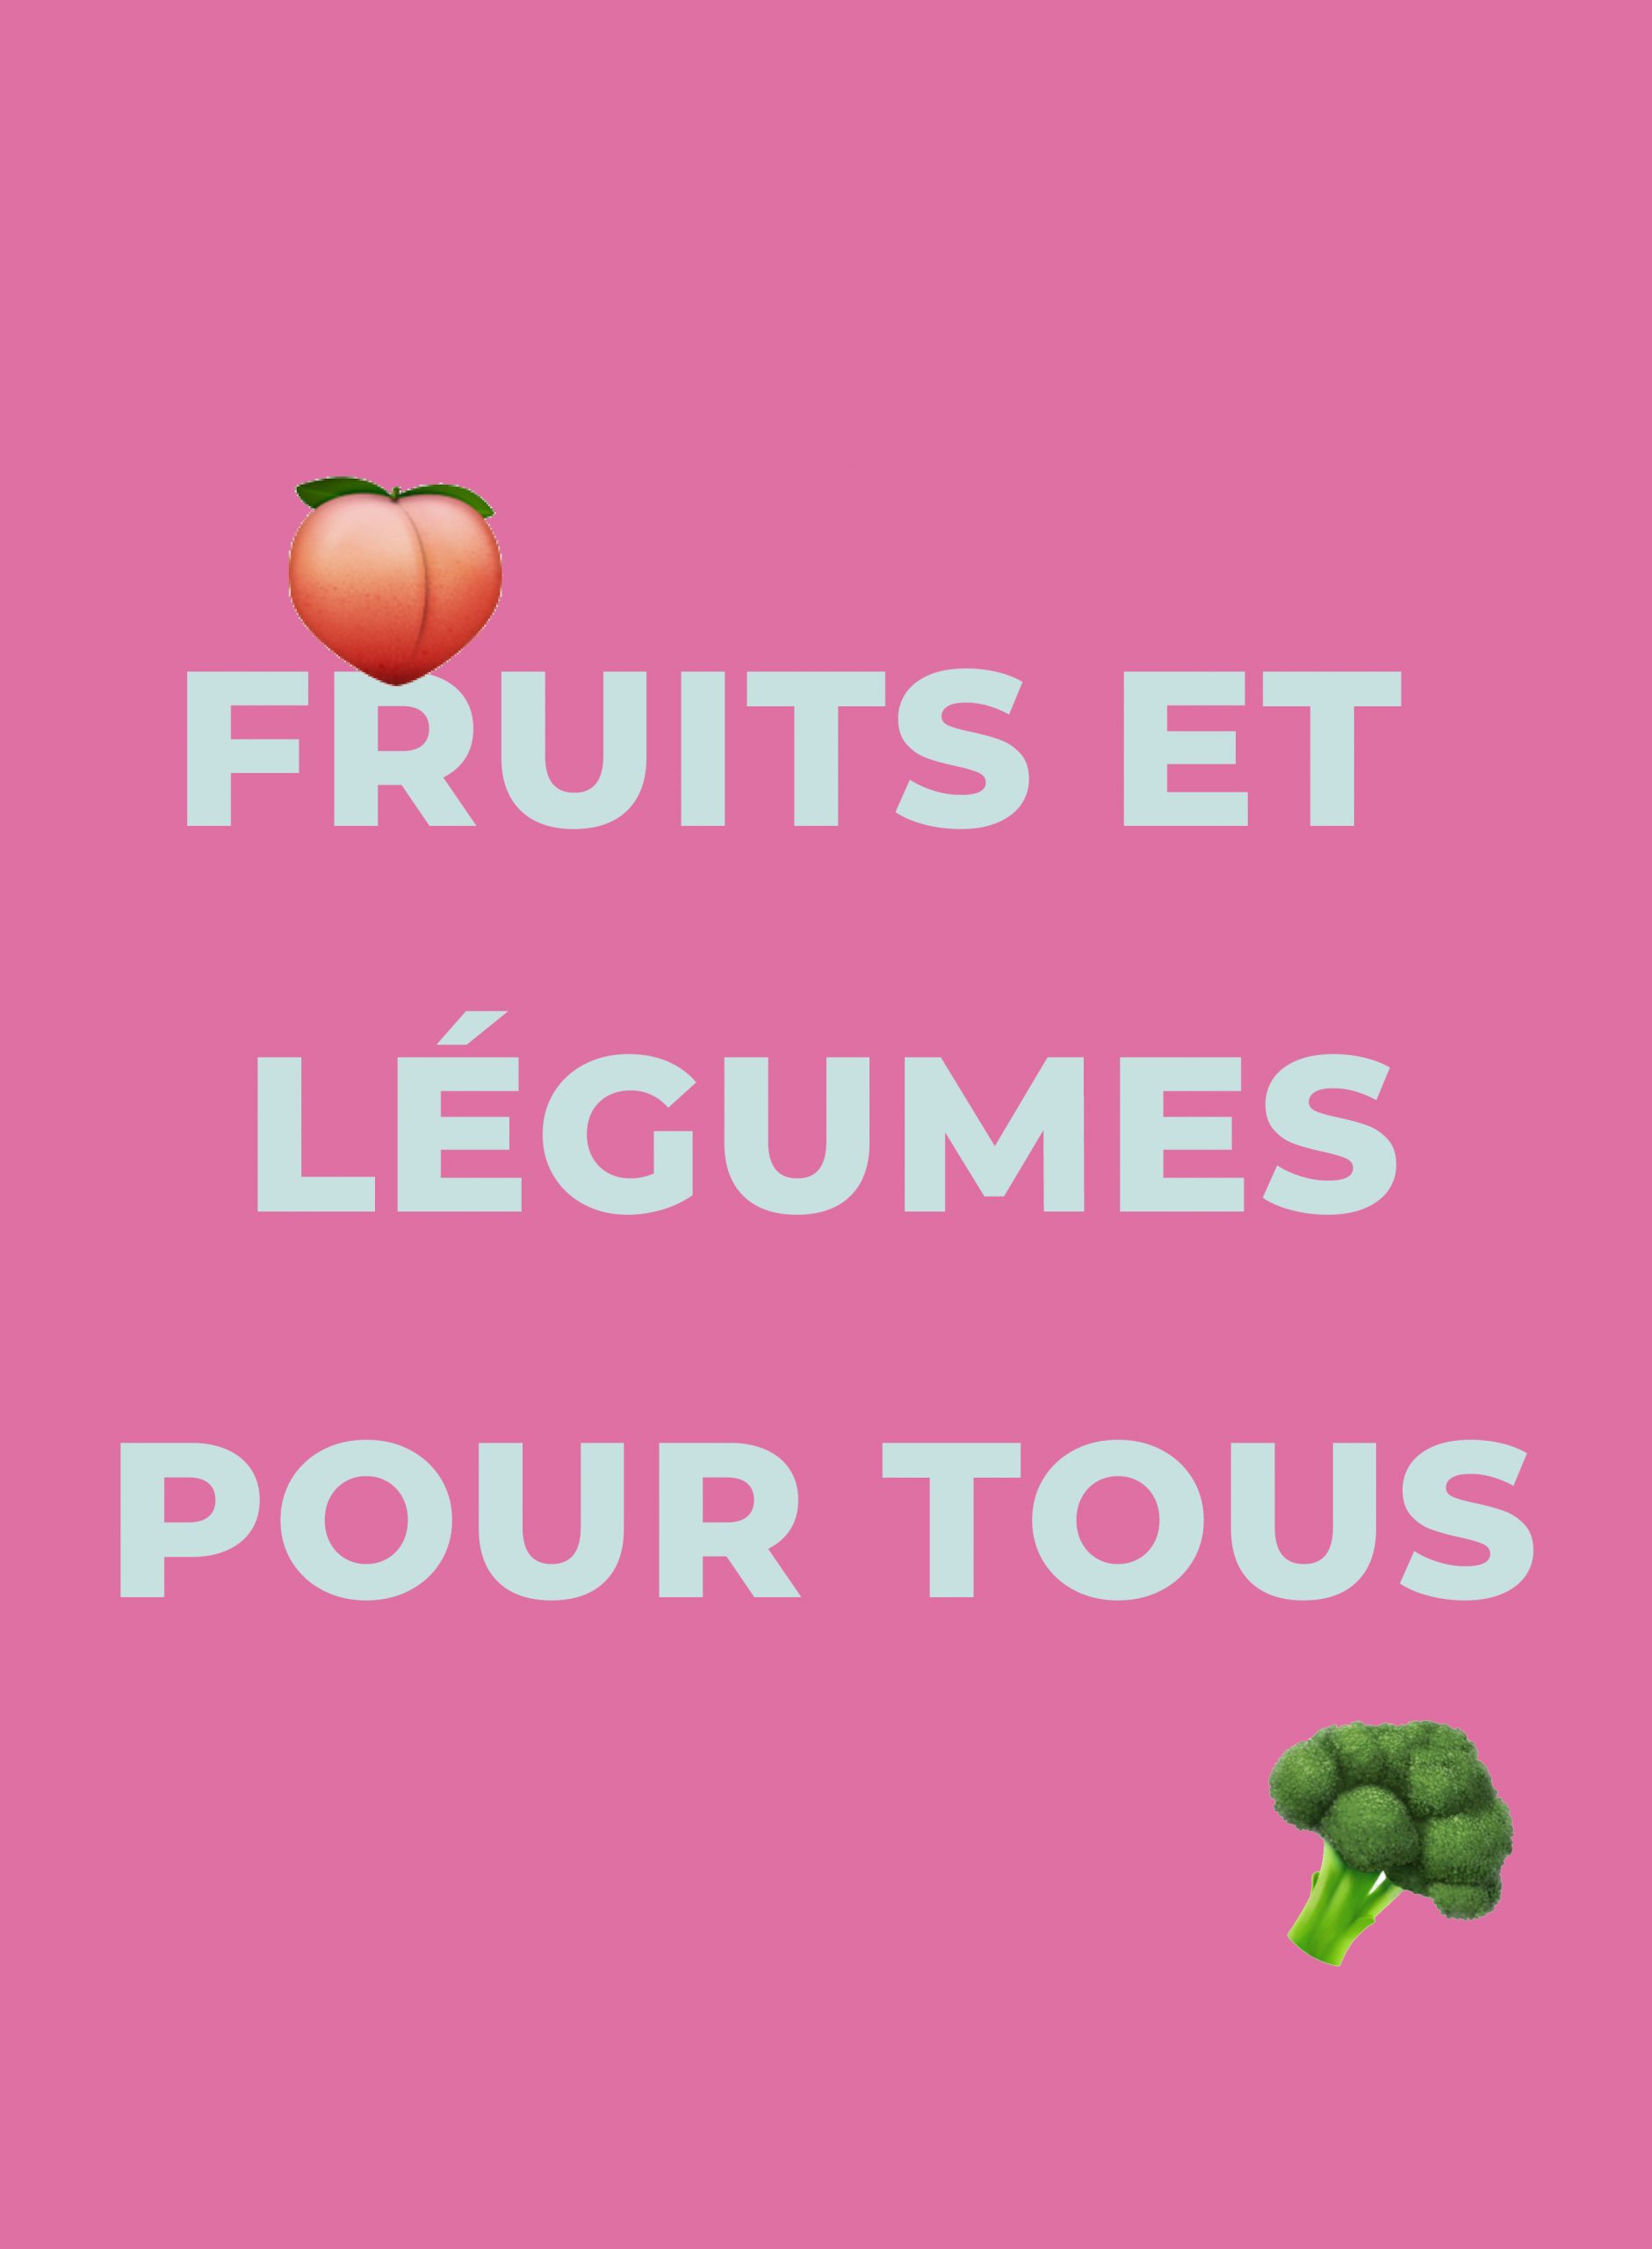 alt-fruits-legumes